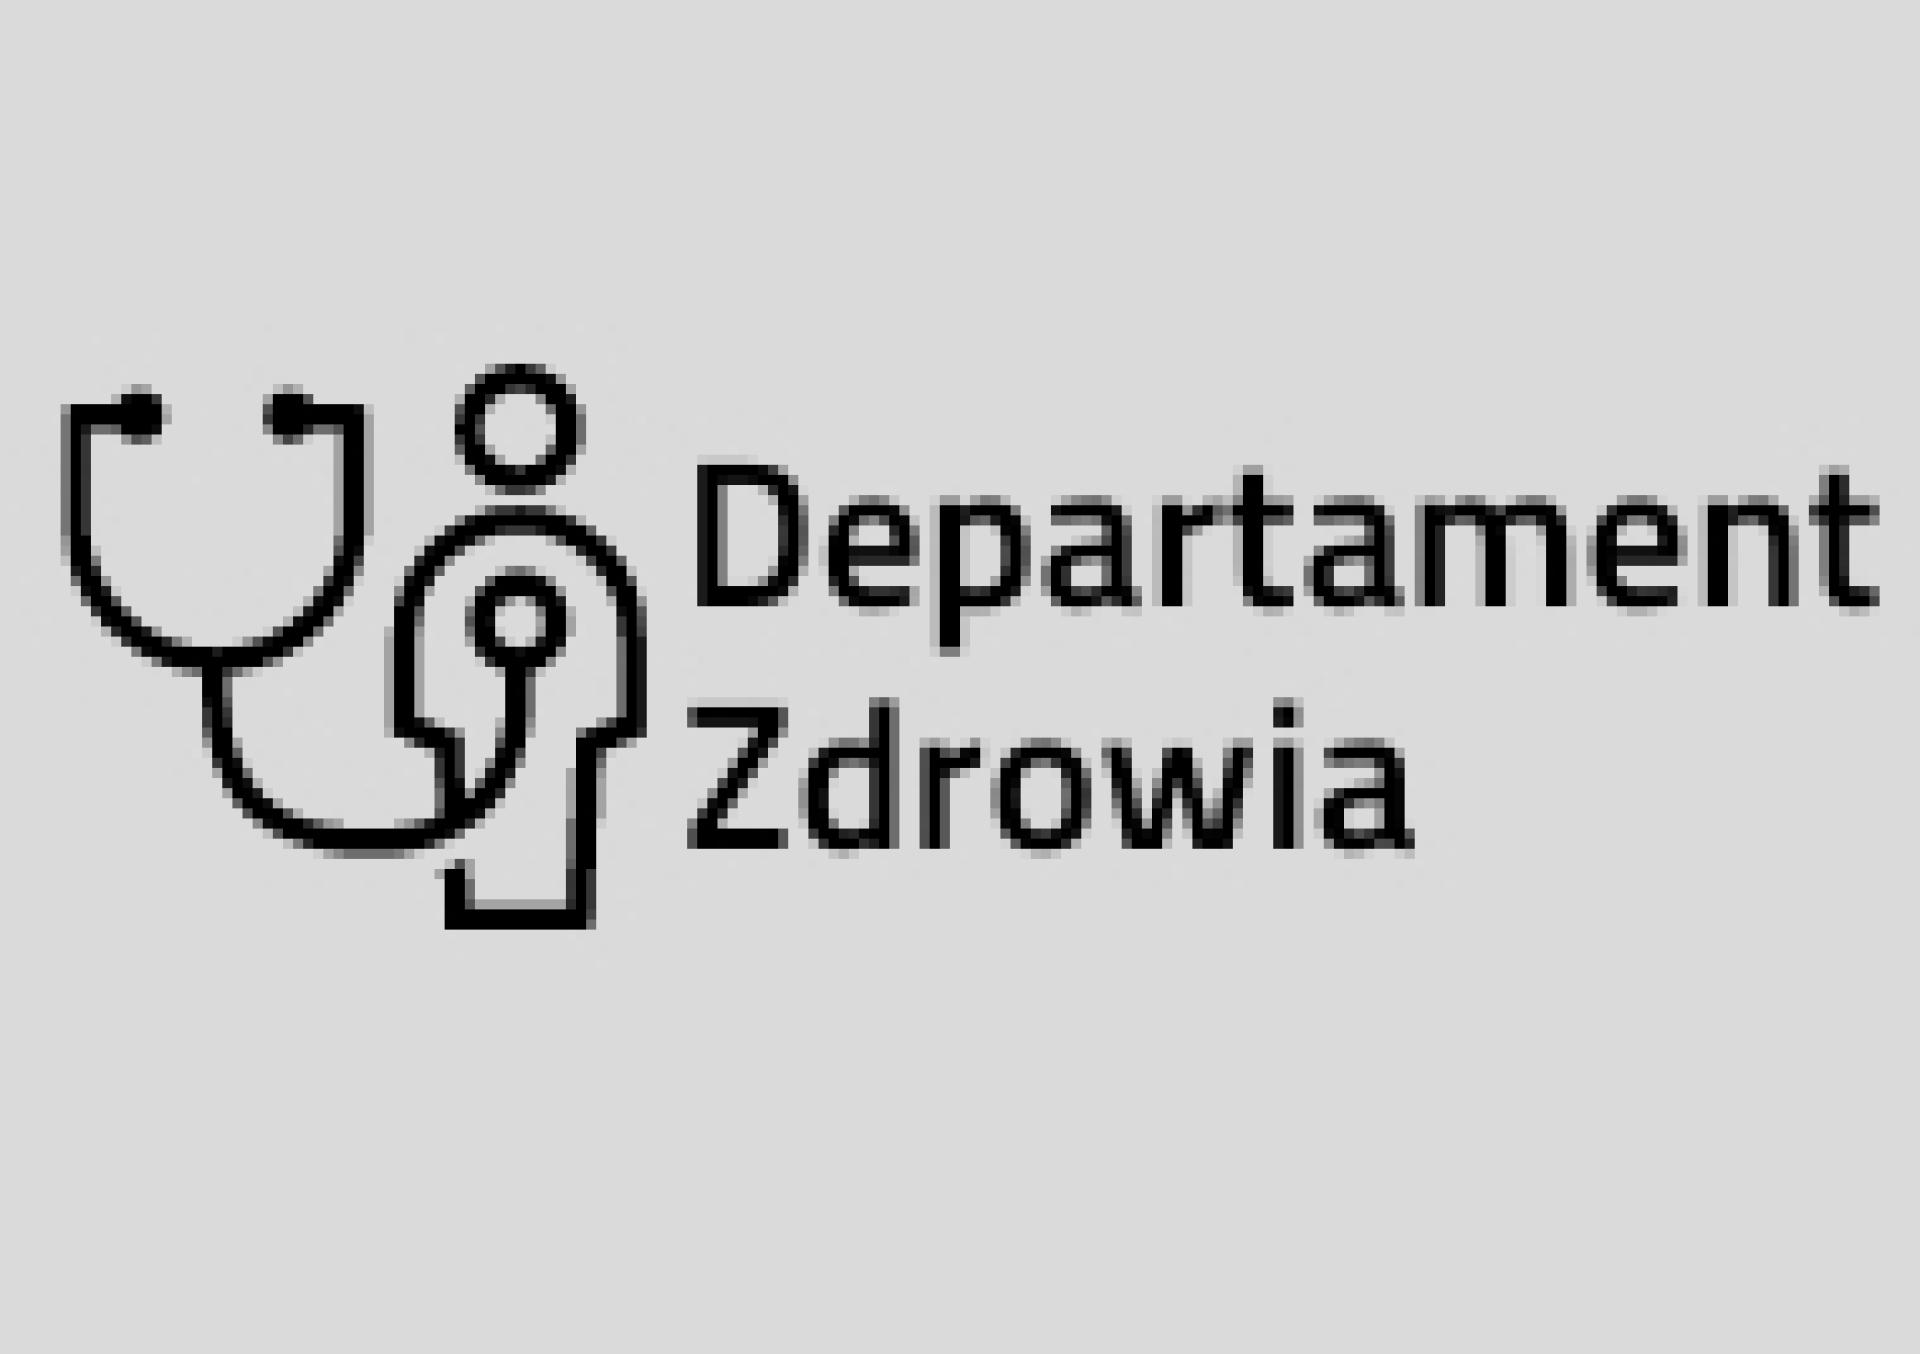  Konsultacje projektu uchwały Sejmiku w sprawie zmiany statutu Wielkopolskiemu Centrum Pulmonologii i Torakochirurgii - zobacz więcej